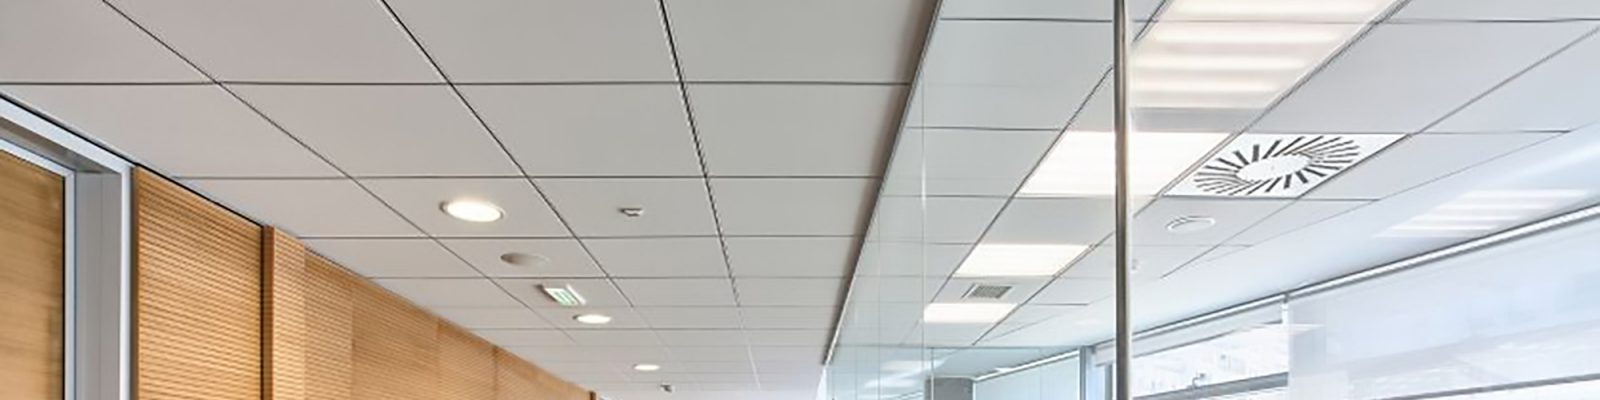 Faux plafond, Dalles - Bureaux, Open Space, Office - Travaux